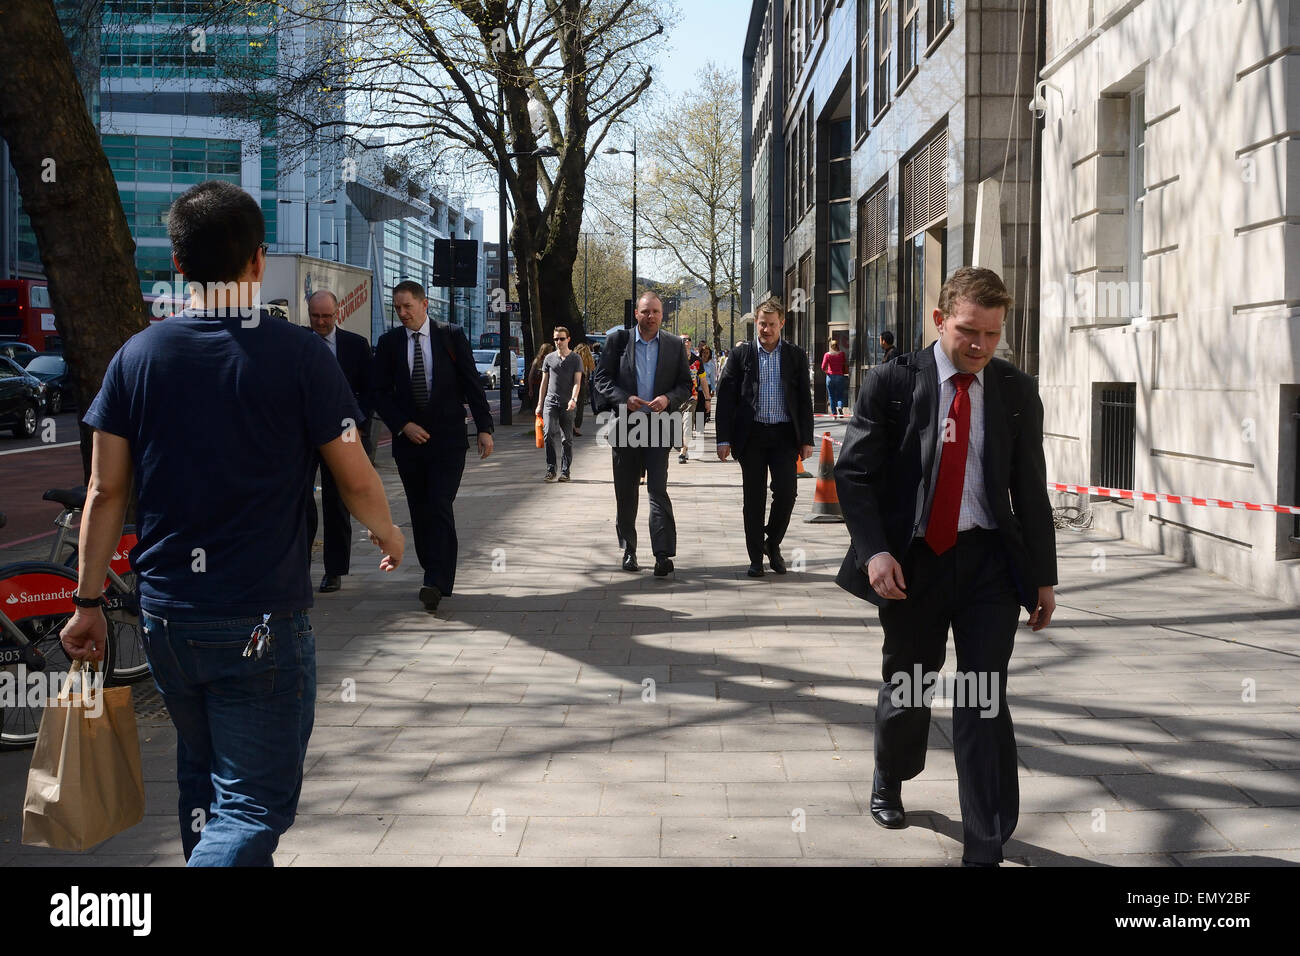 L'homme en jeans et T-shirt en passant devant les hommes en costumes sur la chaussée à Londres Banque D'Images